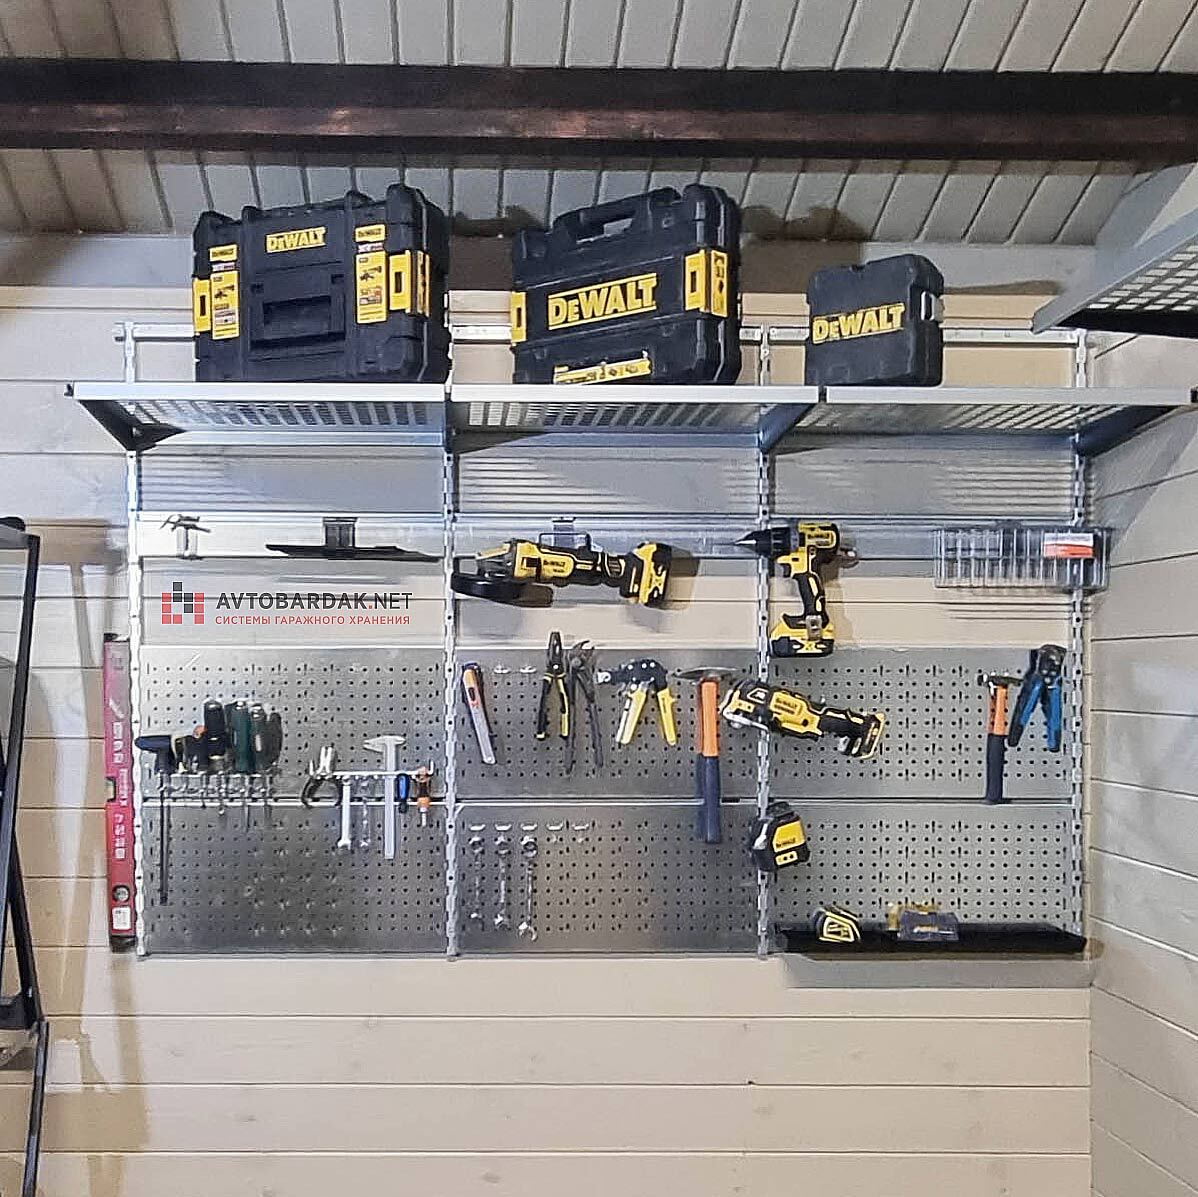 Территория мастера: как организовать хранение инструмента в гараже